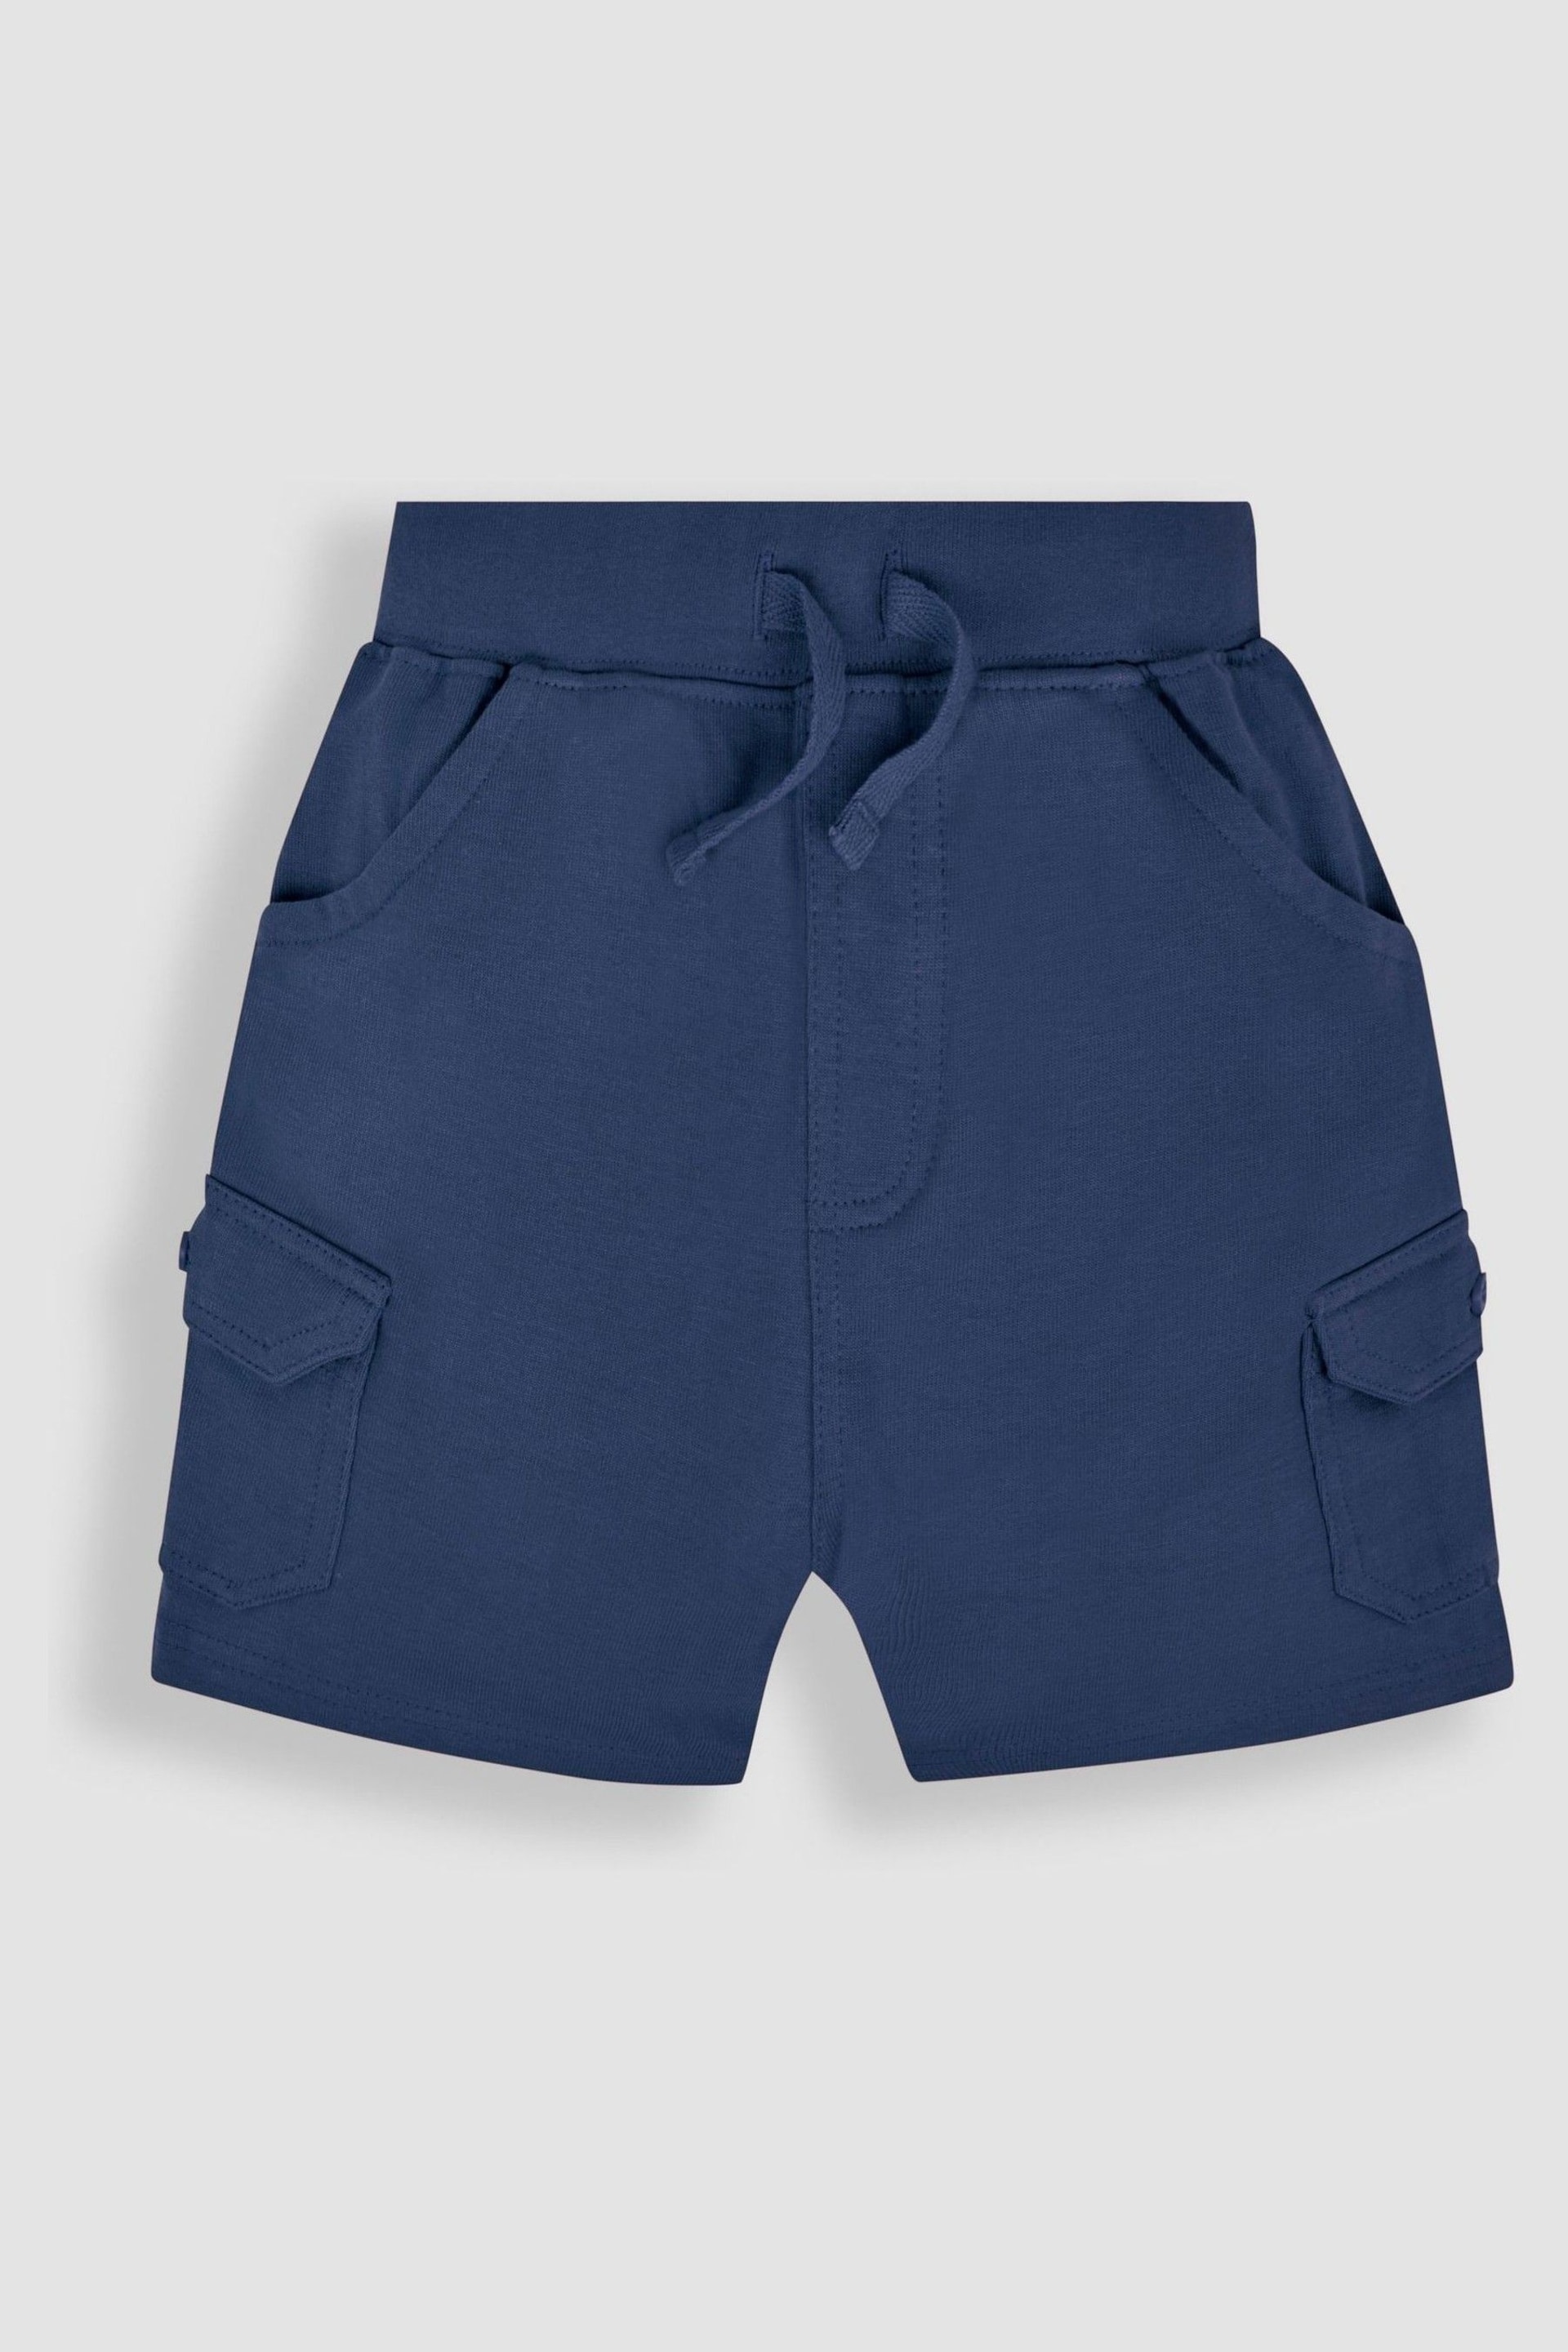 JoJo Maman Bébé Khaki Green 2-Pack Jersey Cargo Shorts - Image 3 of 7